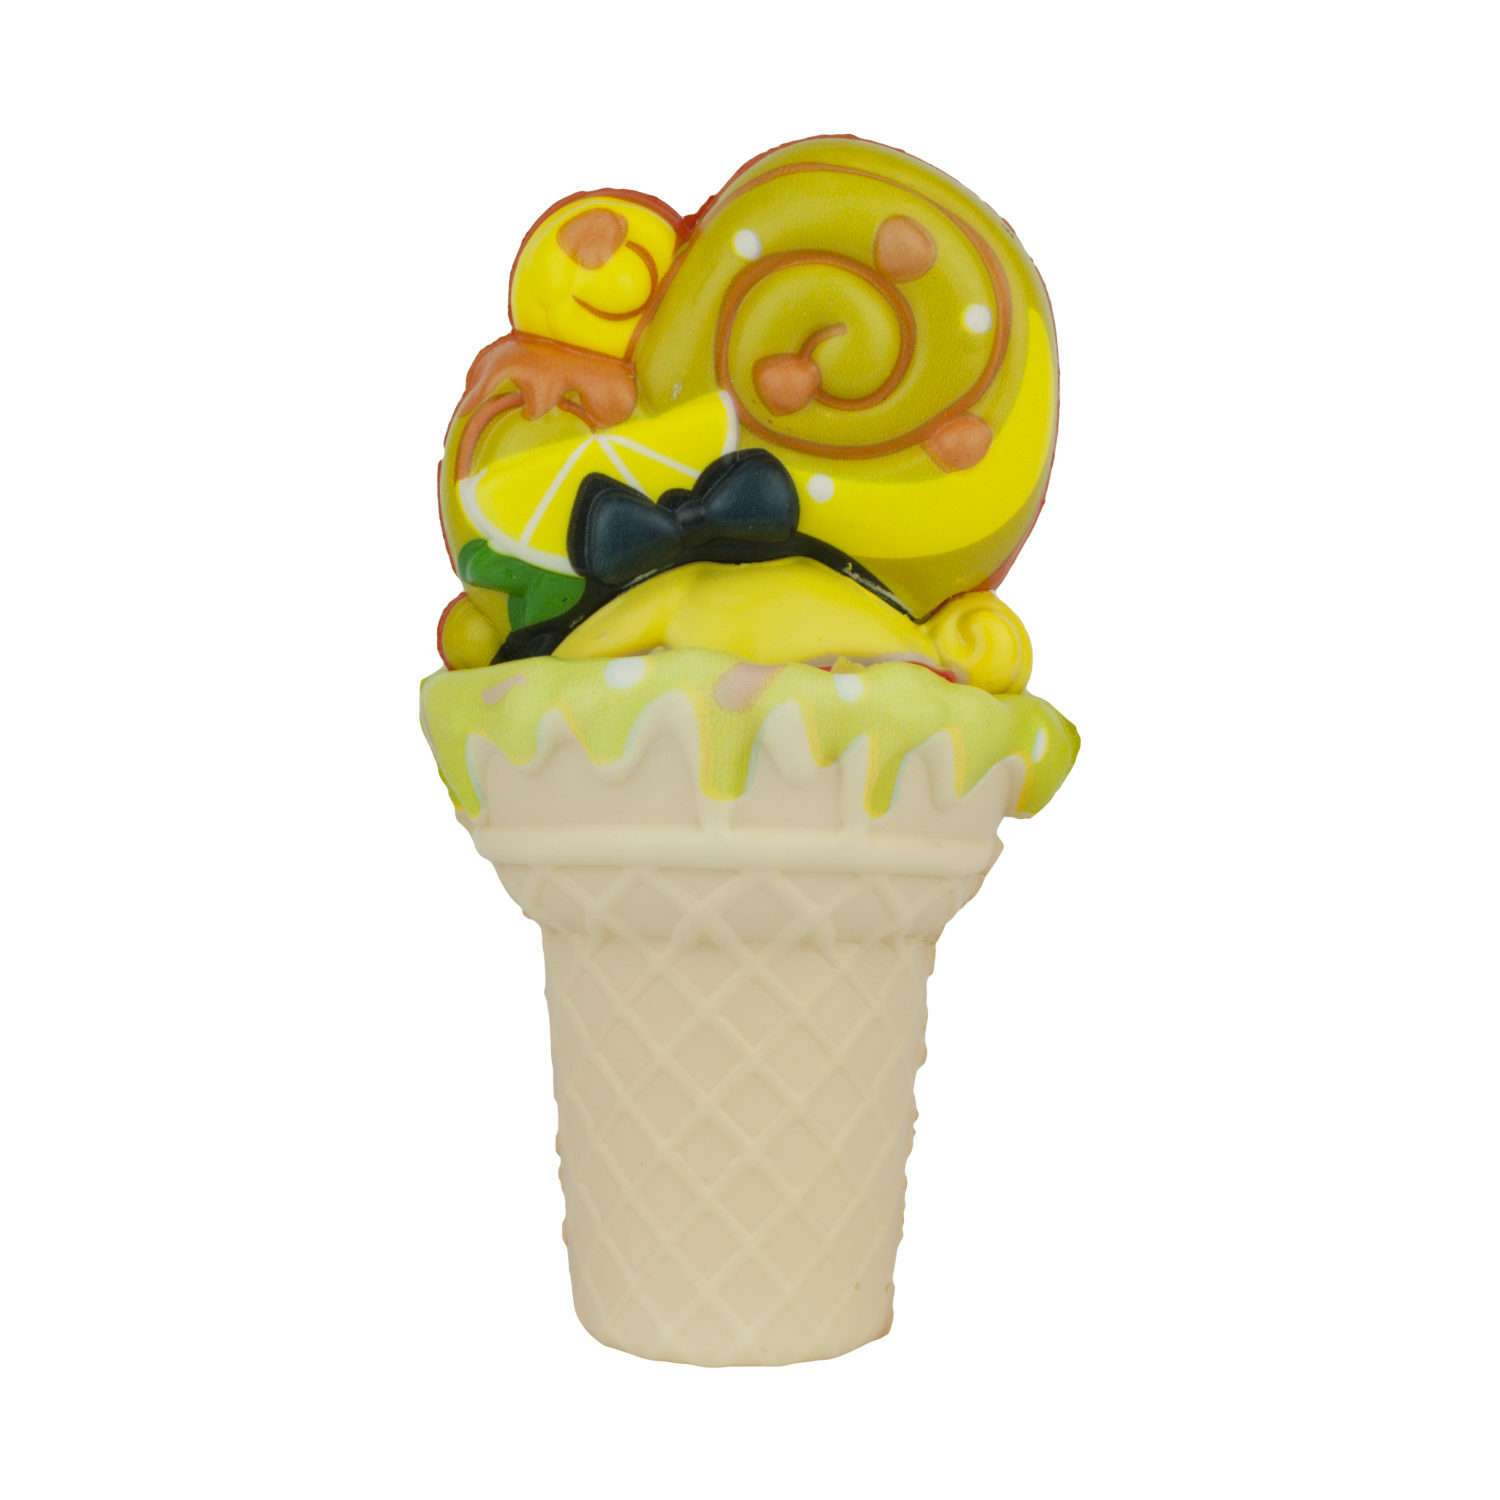 Игрушка сюрприз 1 TOY Мороженки Сквиши стайл Лимонный Сорбет куколка с мягкой прической ароматизированная 12 см Т16226-4 - фото 1